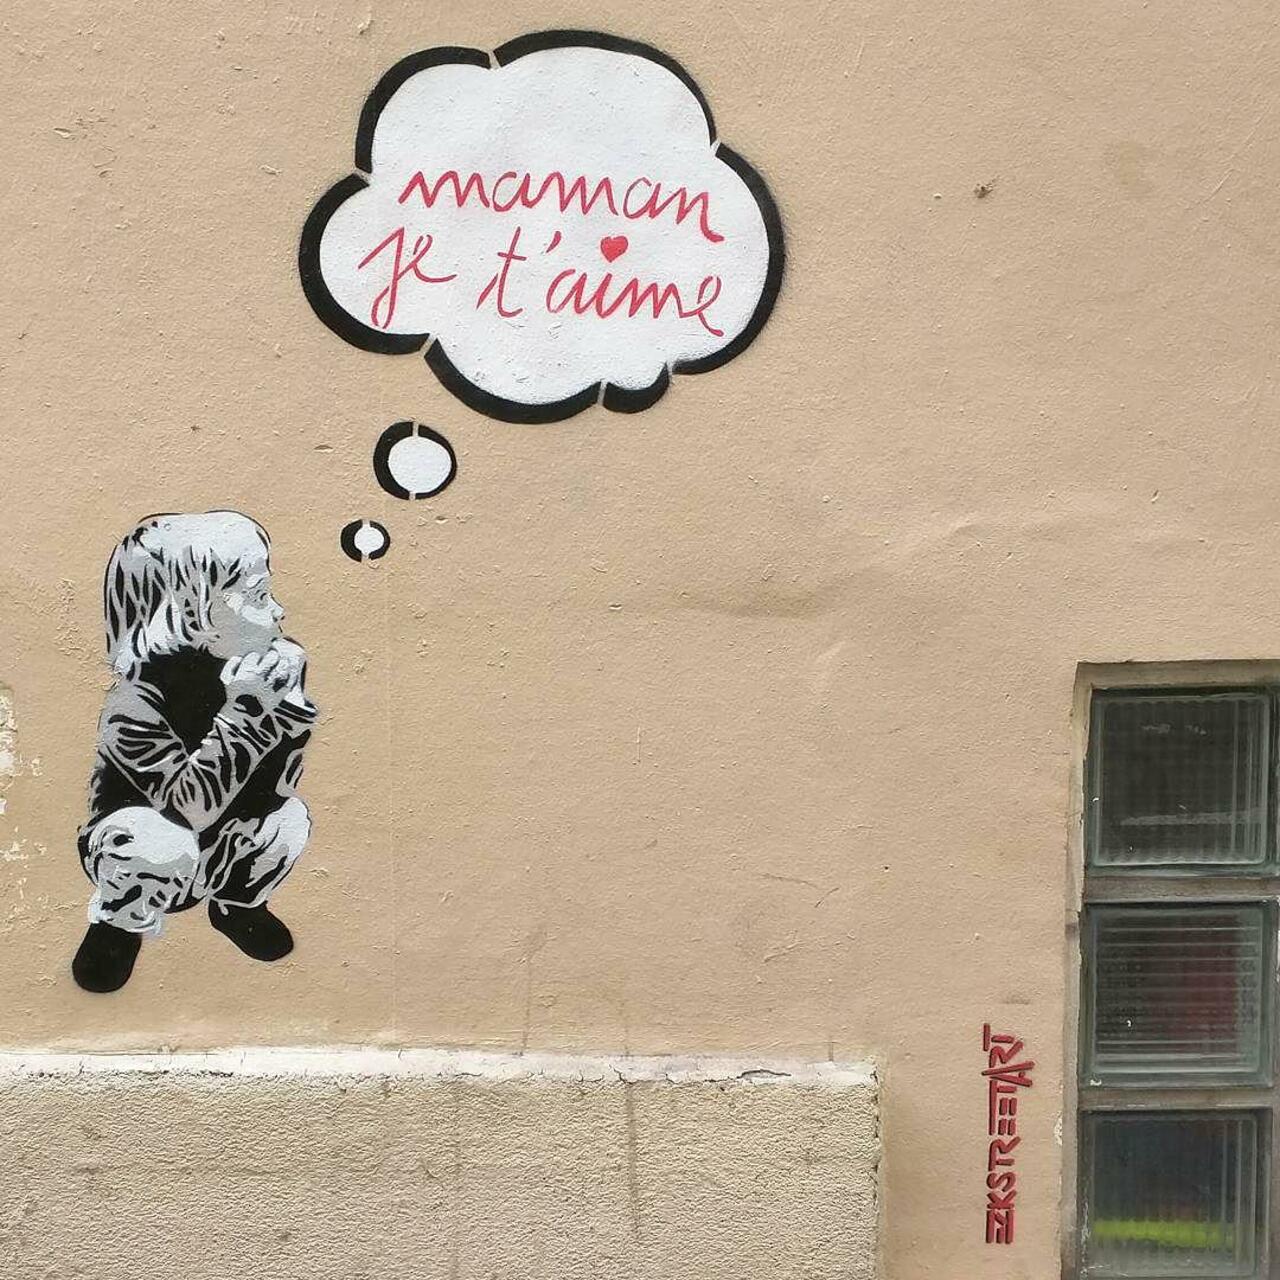 #Paris #graffiti photo by @alphaquadra http://ift.tt/1Pe0Q7w #StreetArt http://t.co/b9YRsz5xyY